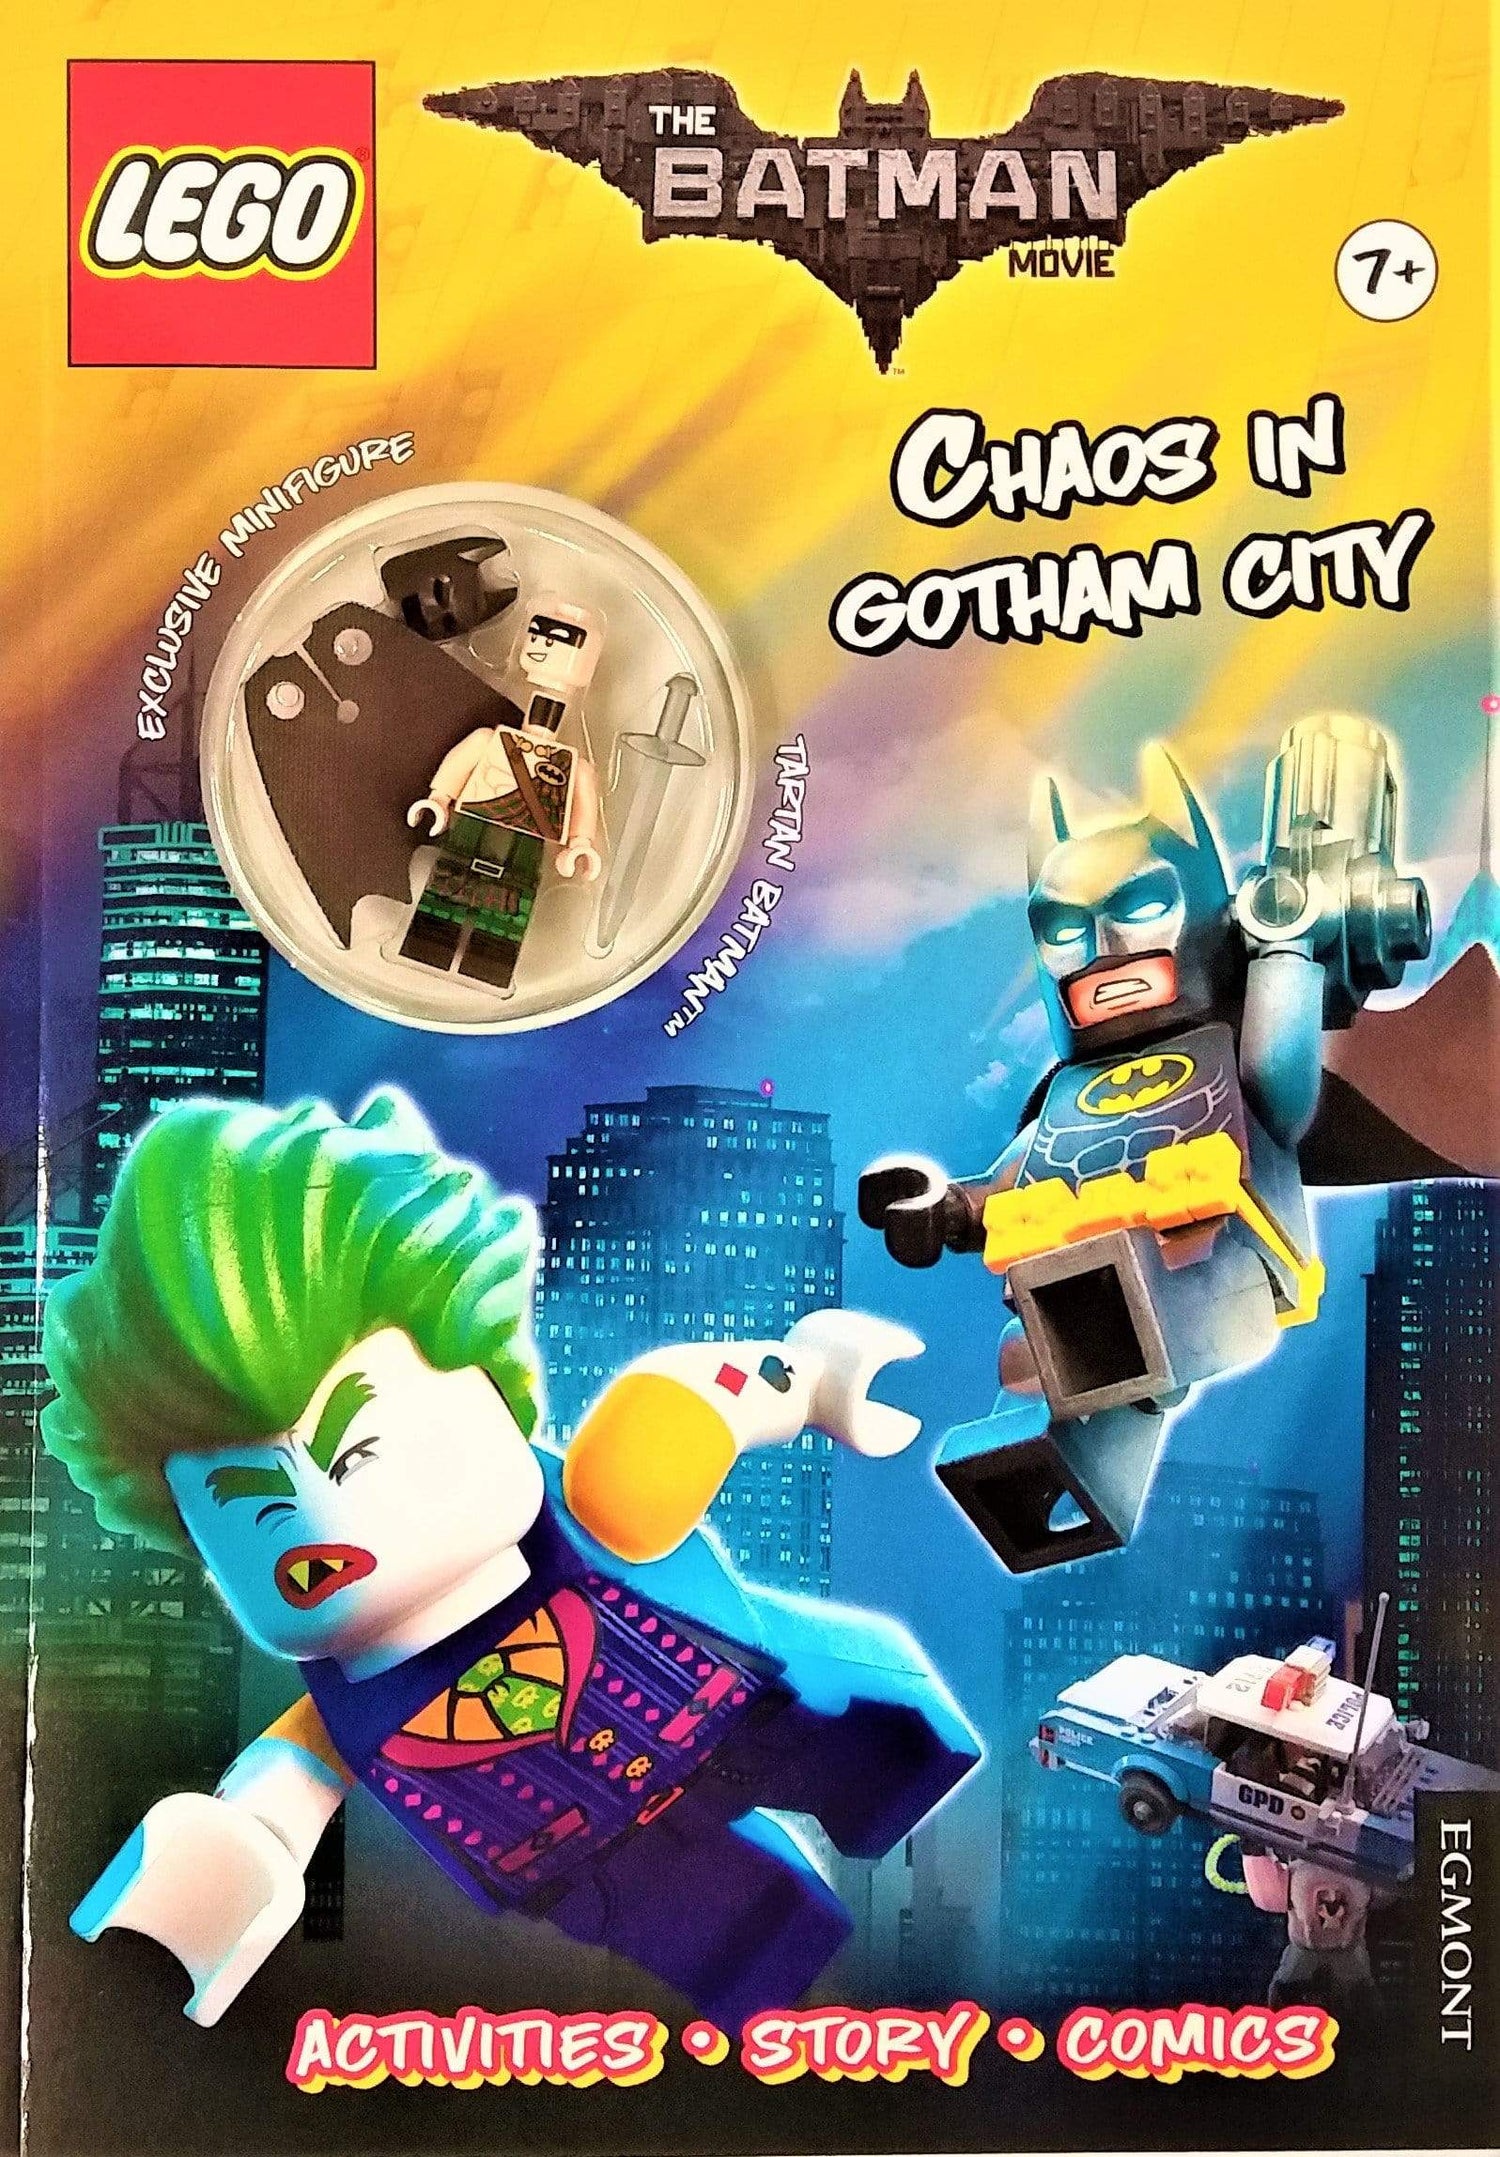 Lego: The Batman Movie Chaos In Gotham City